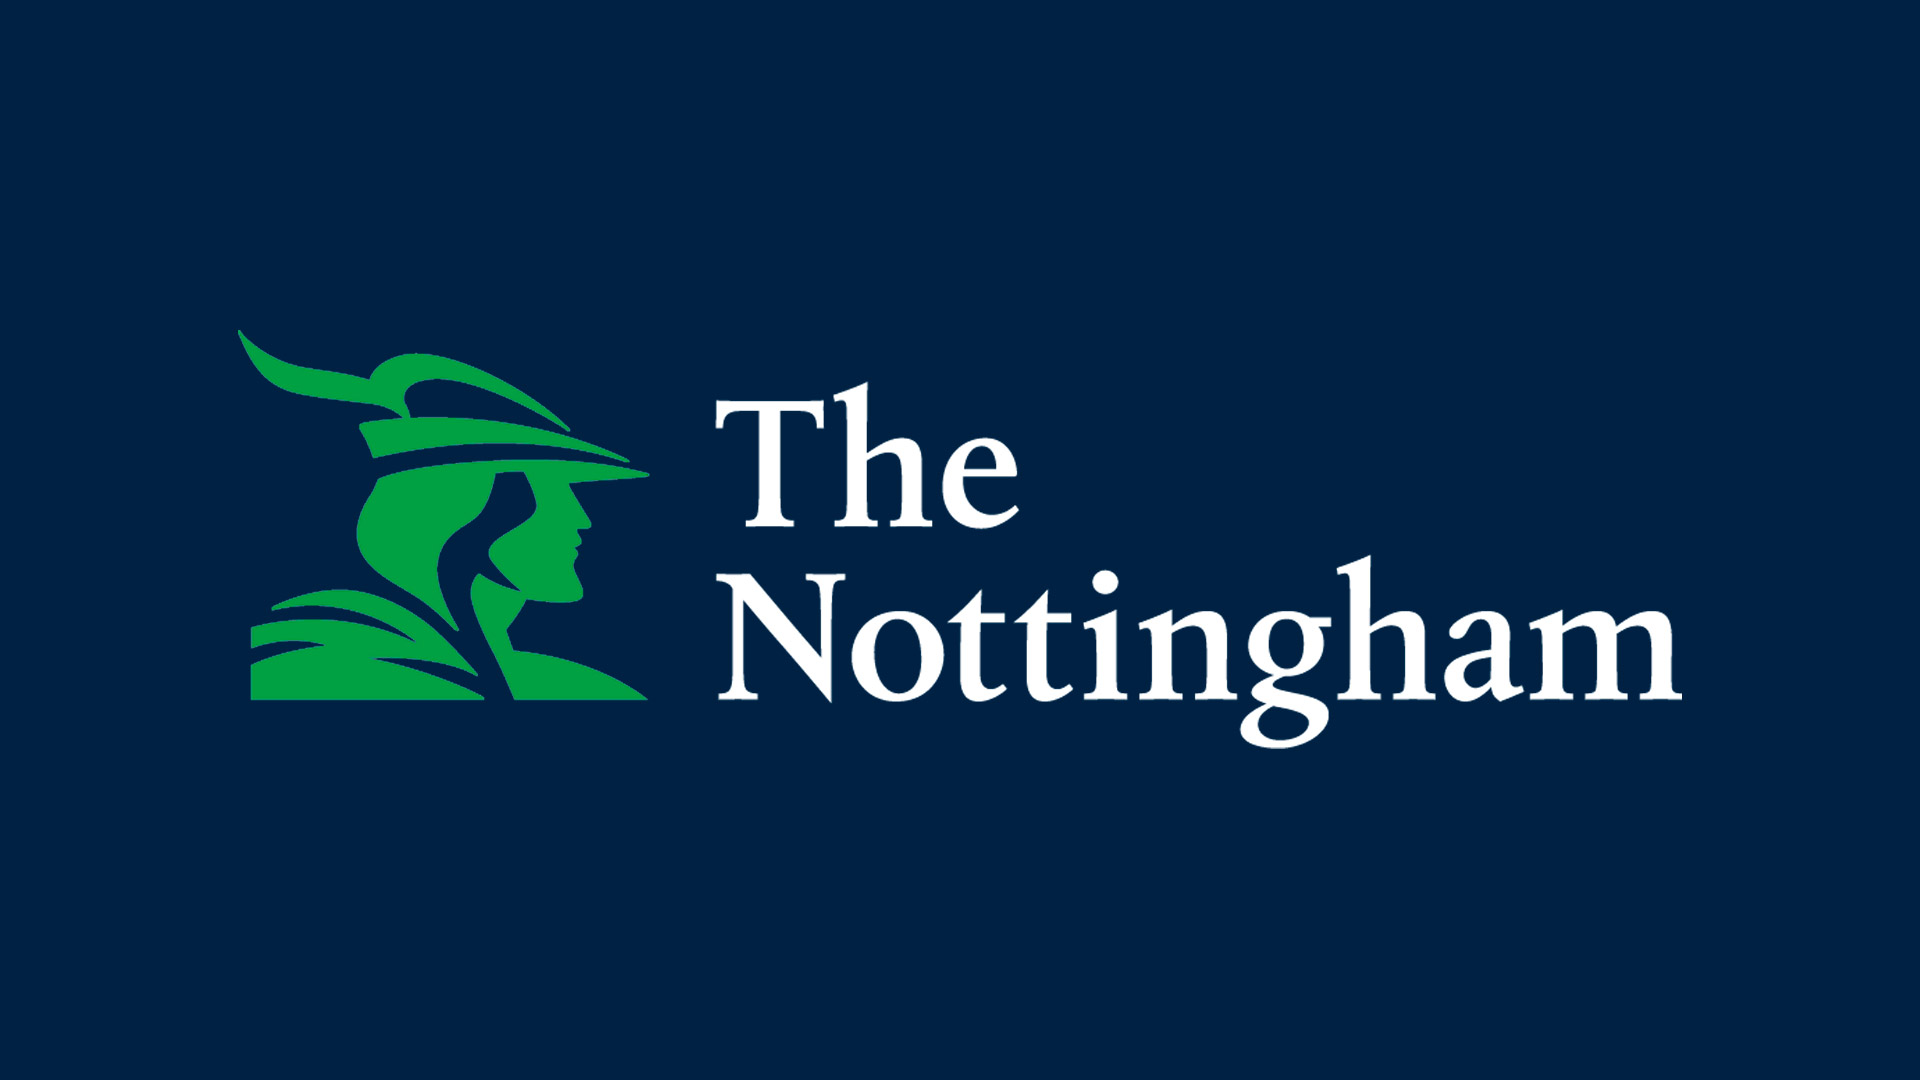 The Nottingham Logo